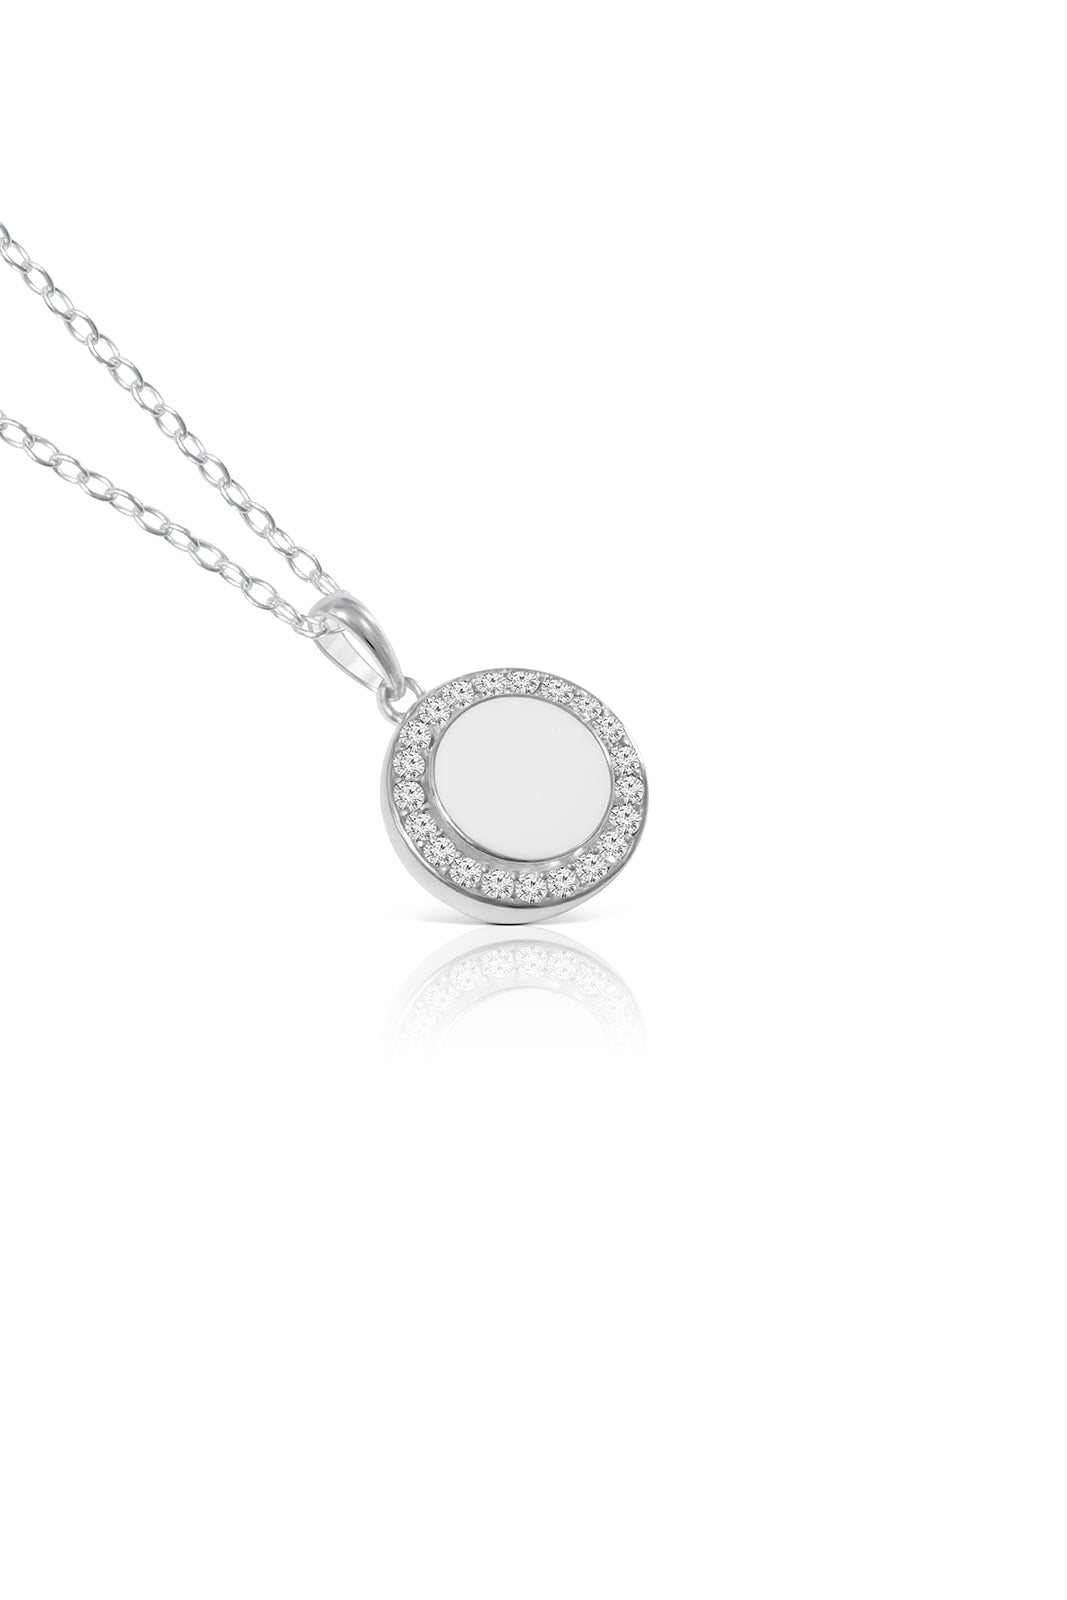 Breastmilk Halo Necklace - Silver 